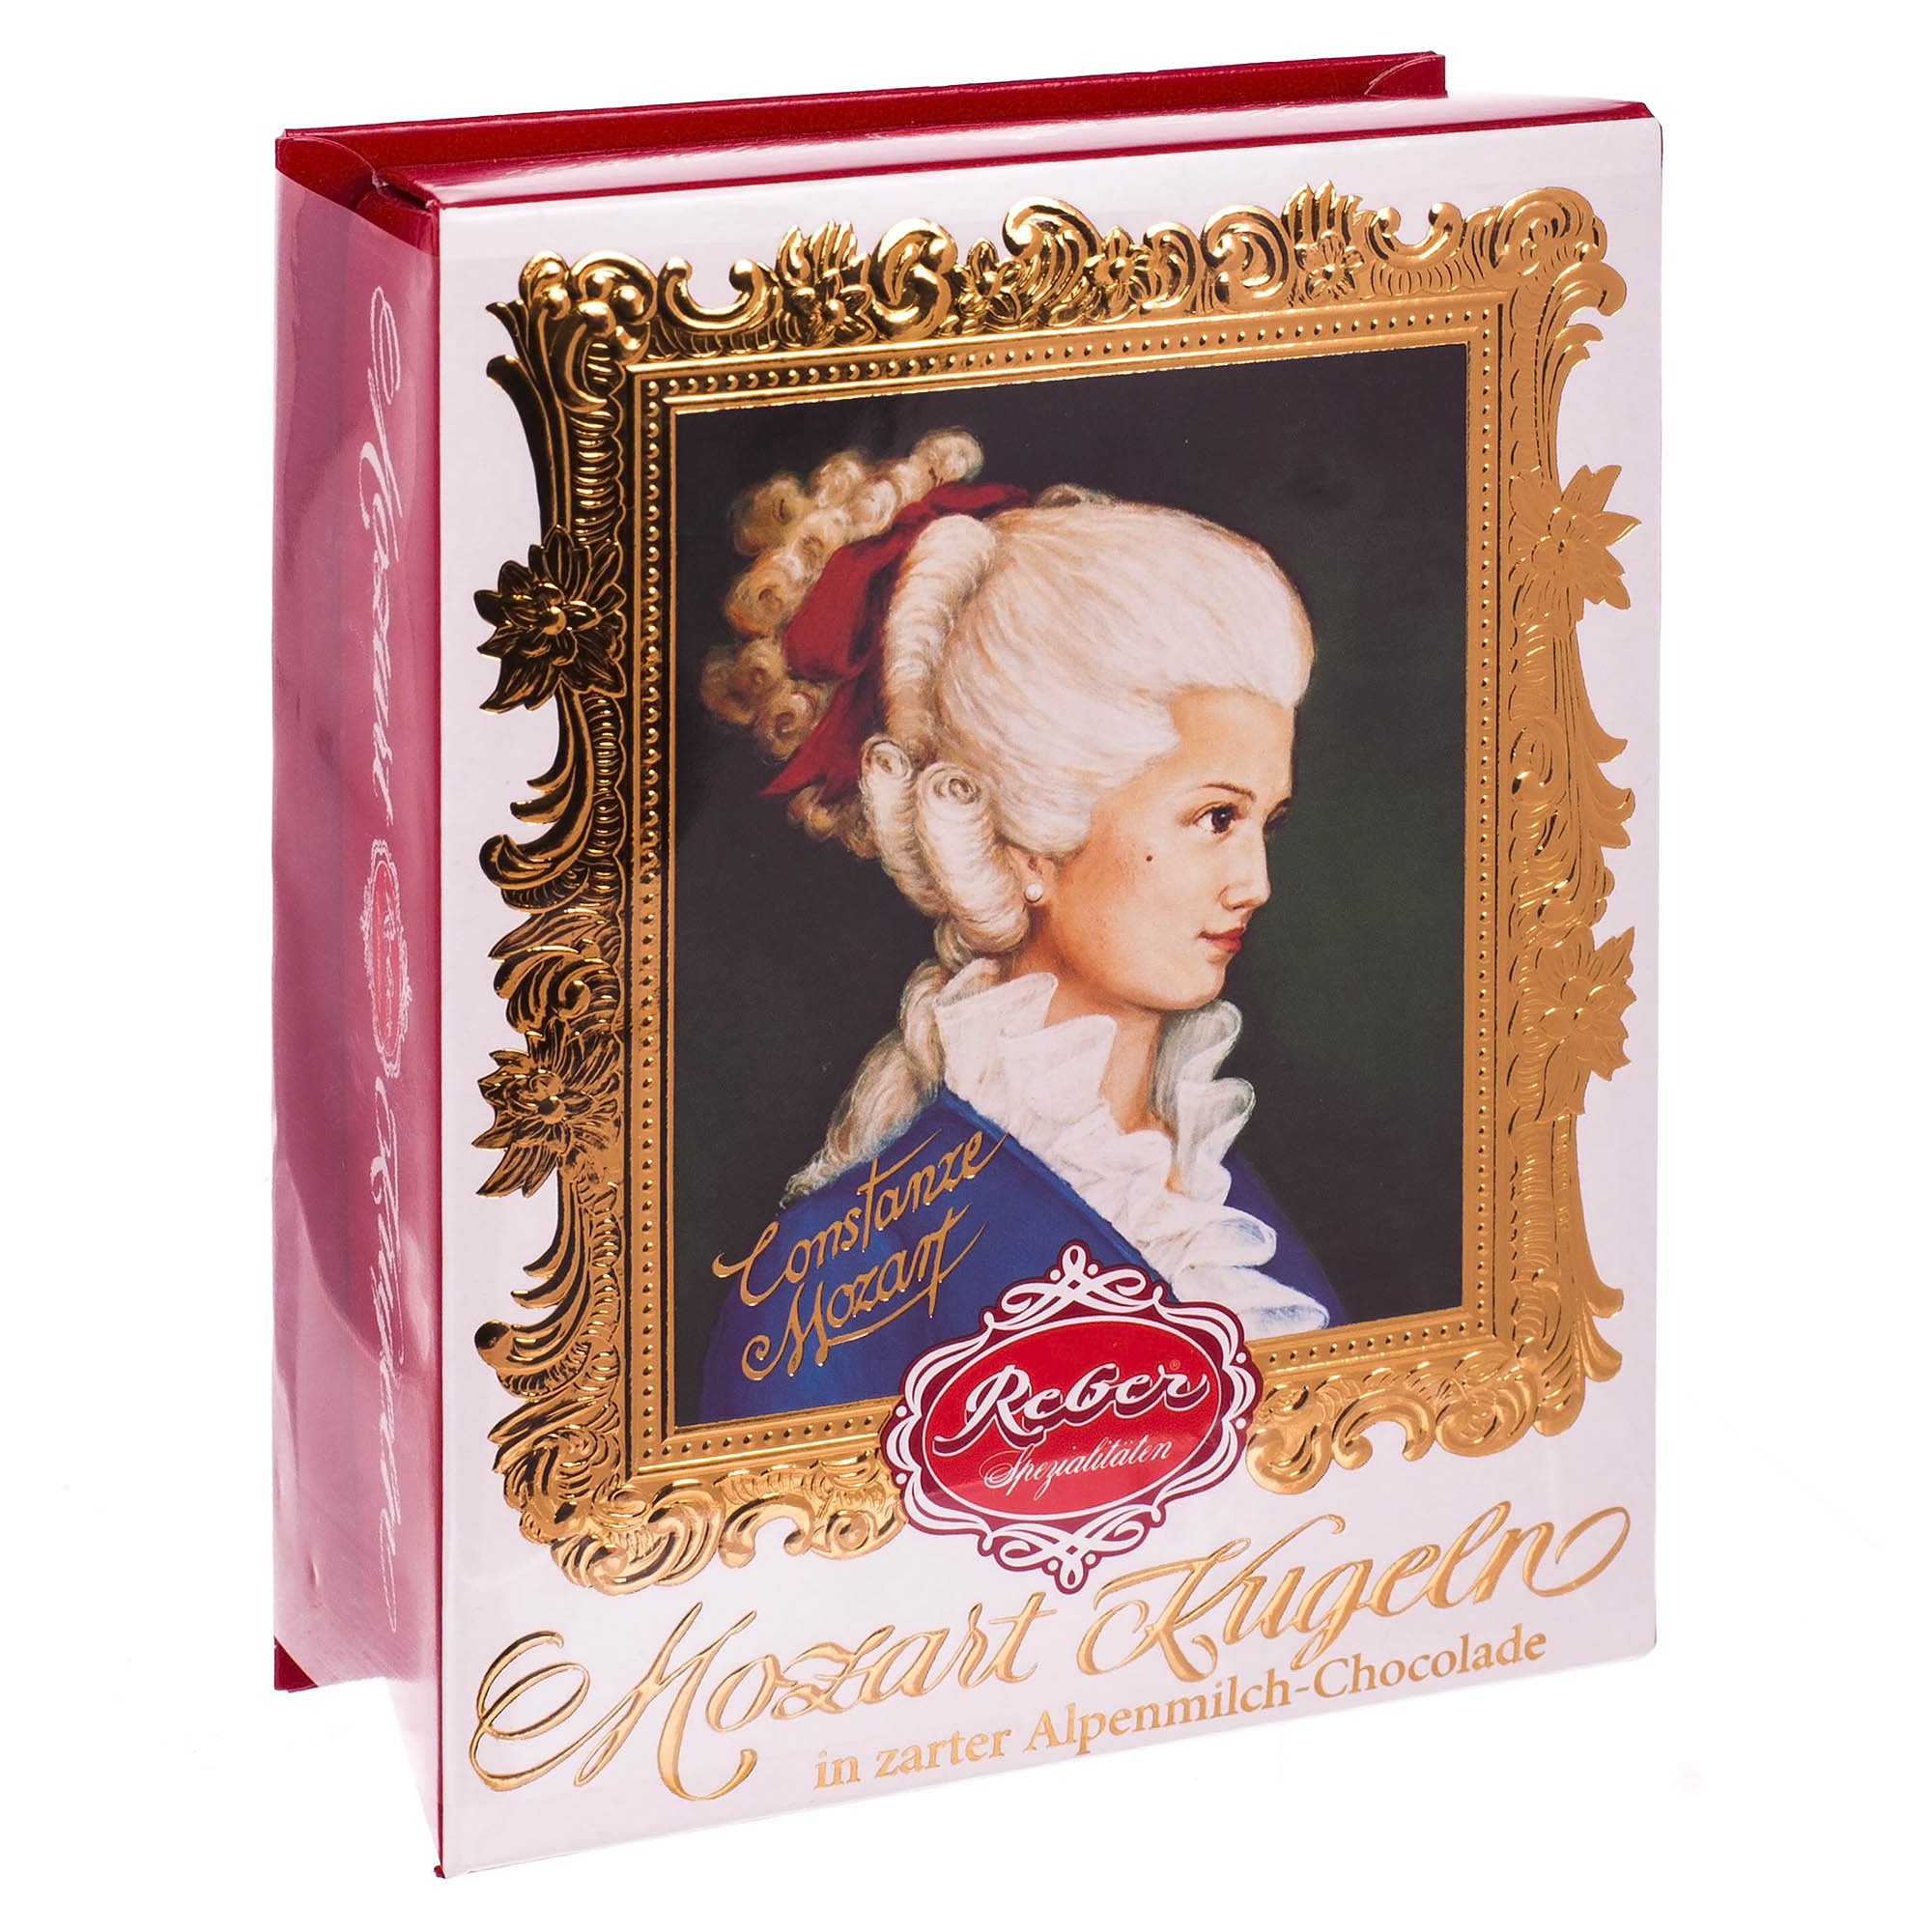 Mozart Kugel Reber подарочный набор с молочным шоколадом 120 г (1410111/5) набор печатей для марципана и теста